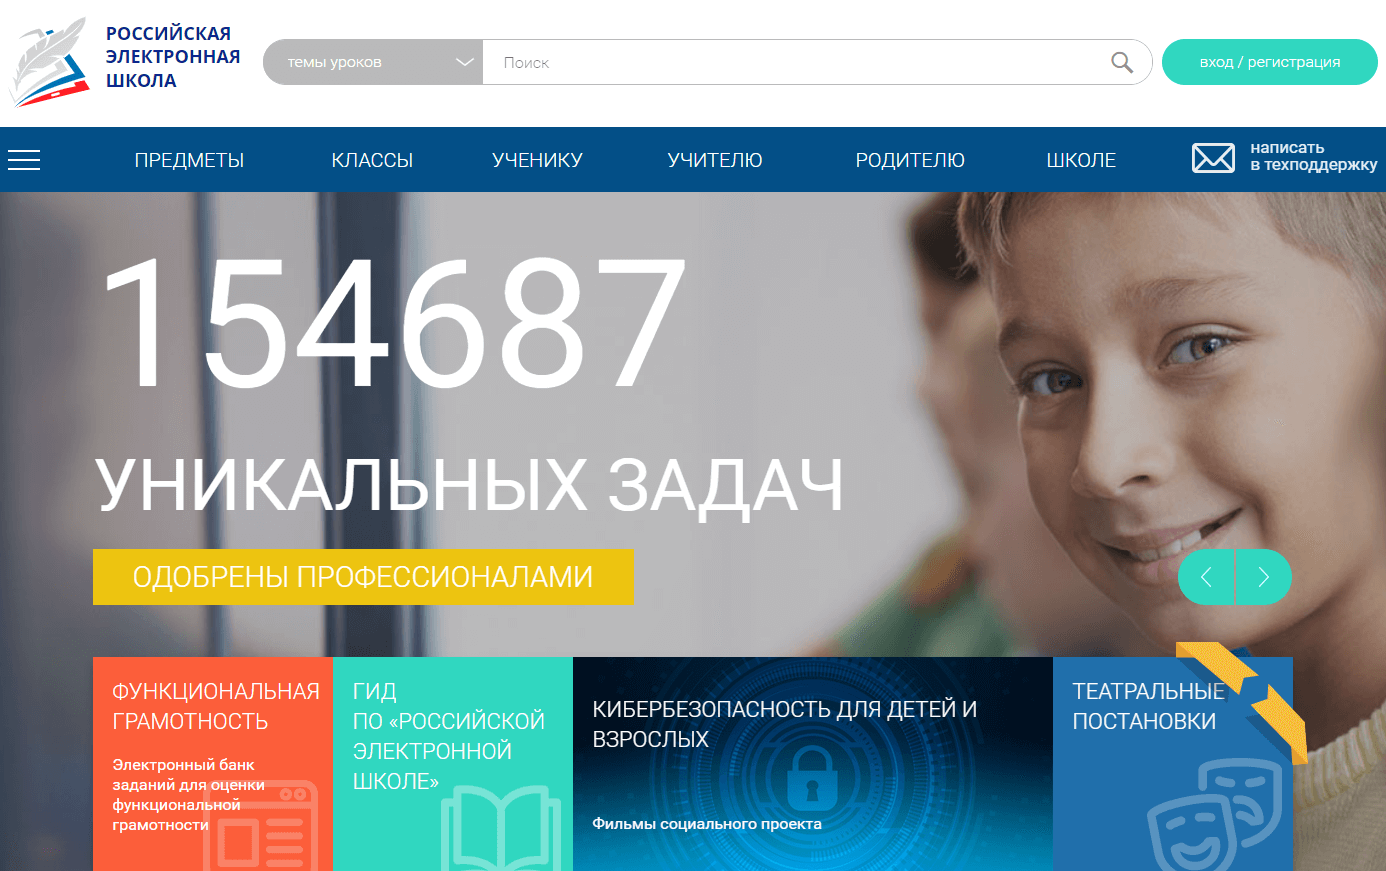 Видеоуроки российской электронной школы